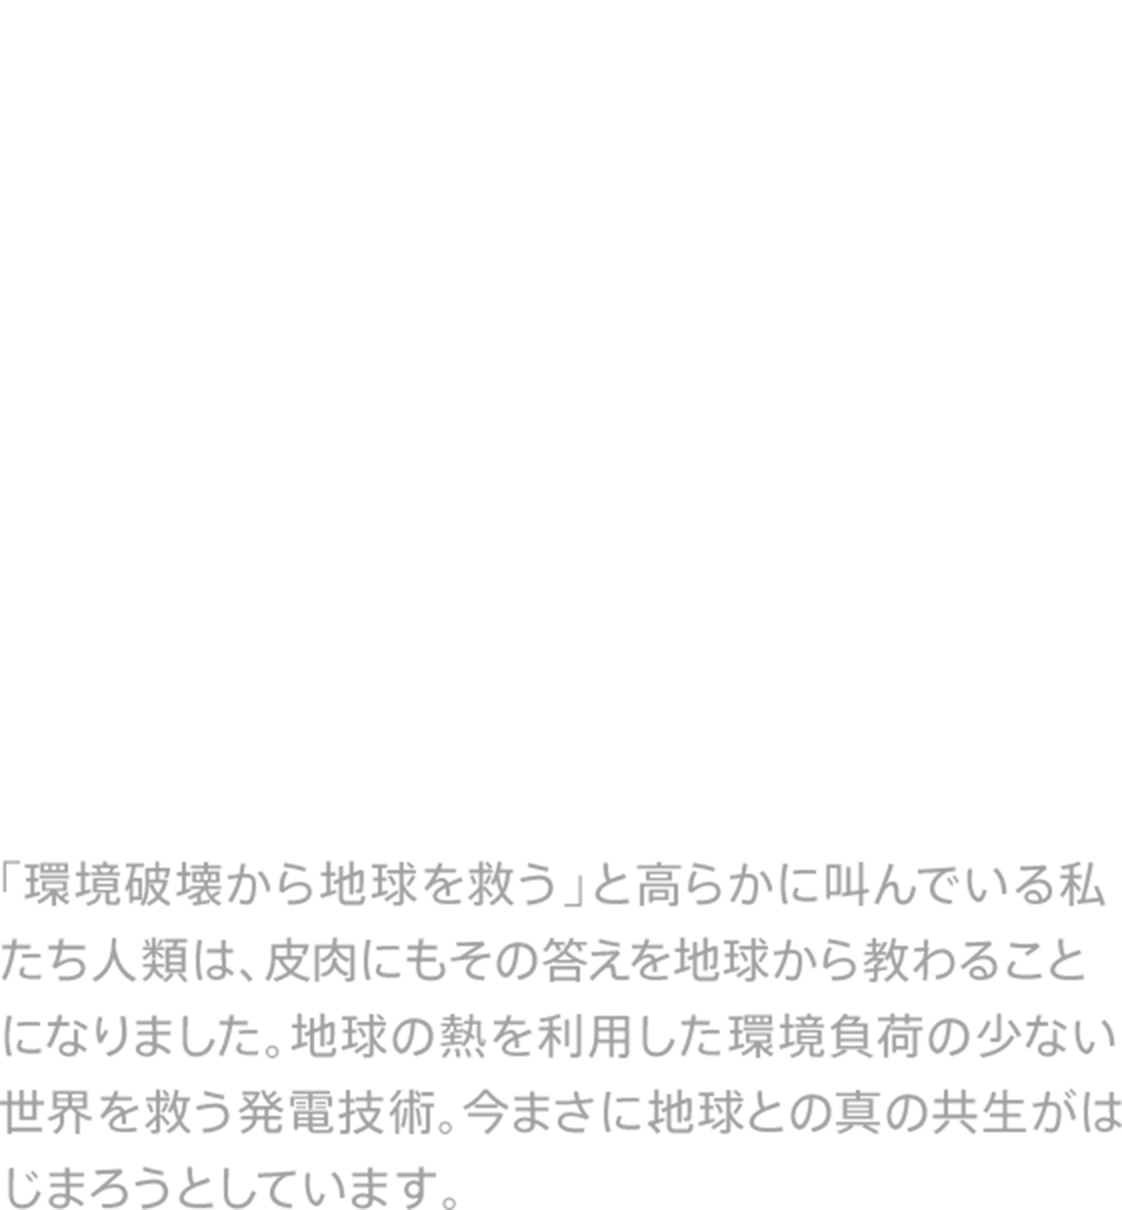 Earth Generator J・NEC - 結局人類は、地球に救われる。「環境破壊から地球を救う」と高らかに叫んでいる私たち人類は、皮肉にもその答えを地球から教わることになりました。地球の熱を利用した環境負荷の少ない世界を救う発電技術。今まさに、地球との真の共生がはじまろうとしています。